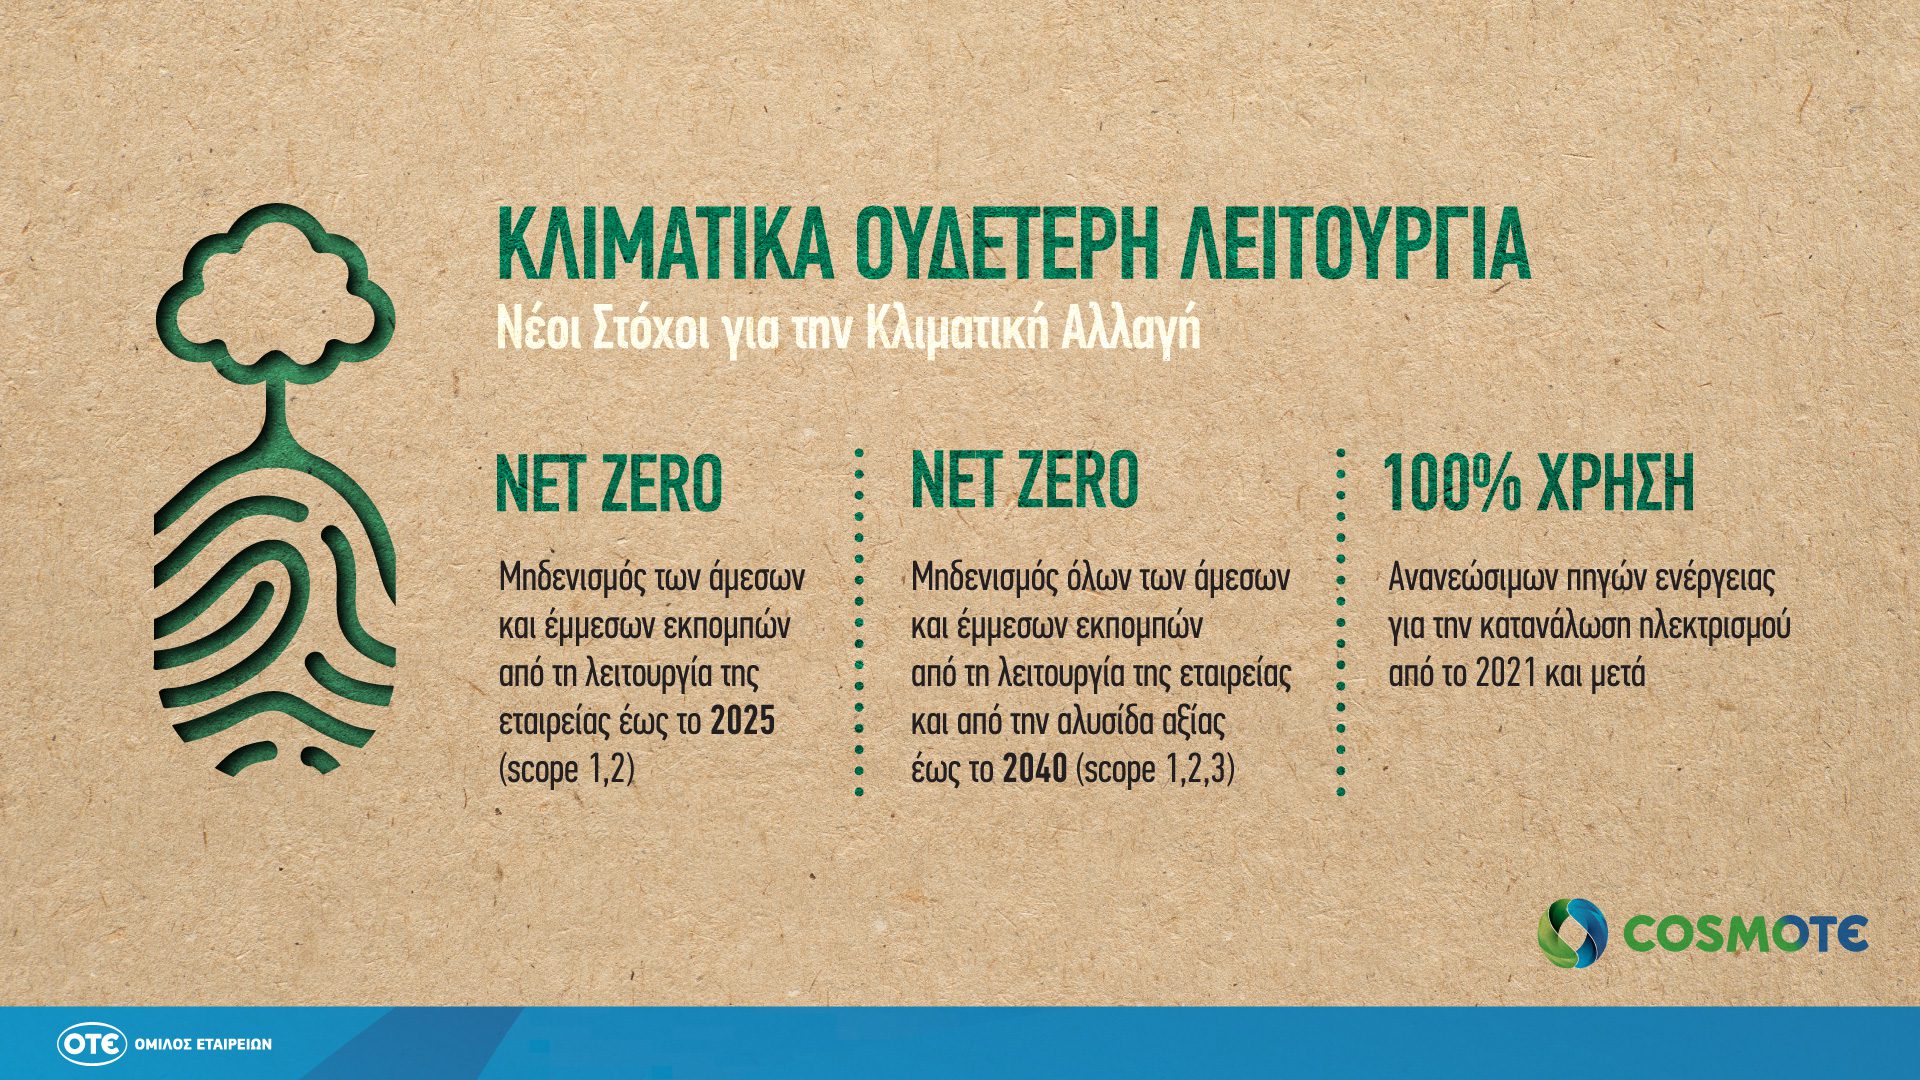 COSMOTE NetZero Infographic